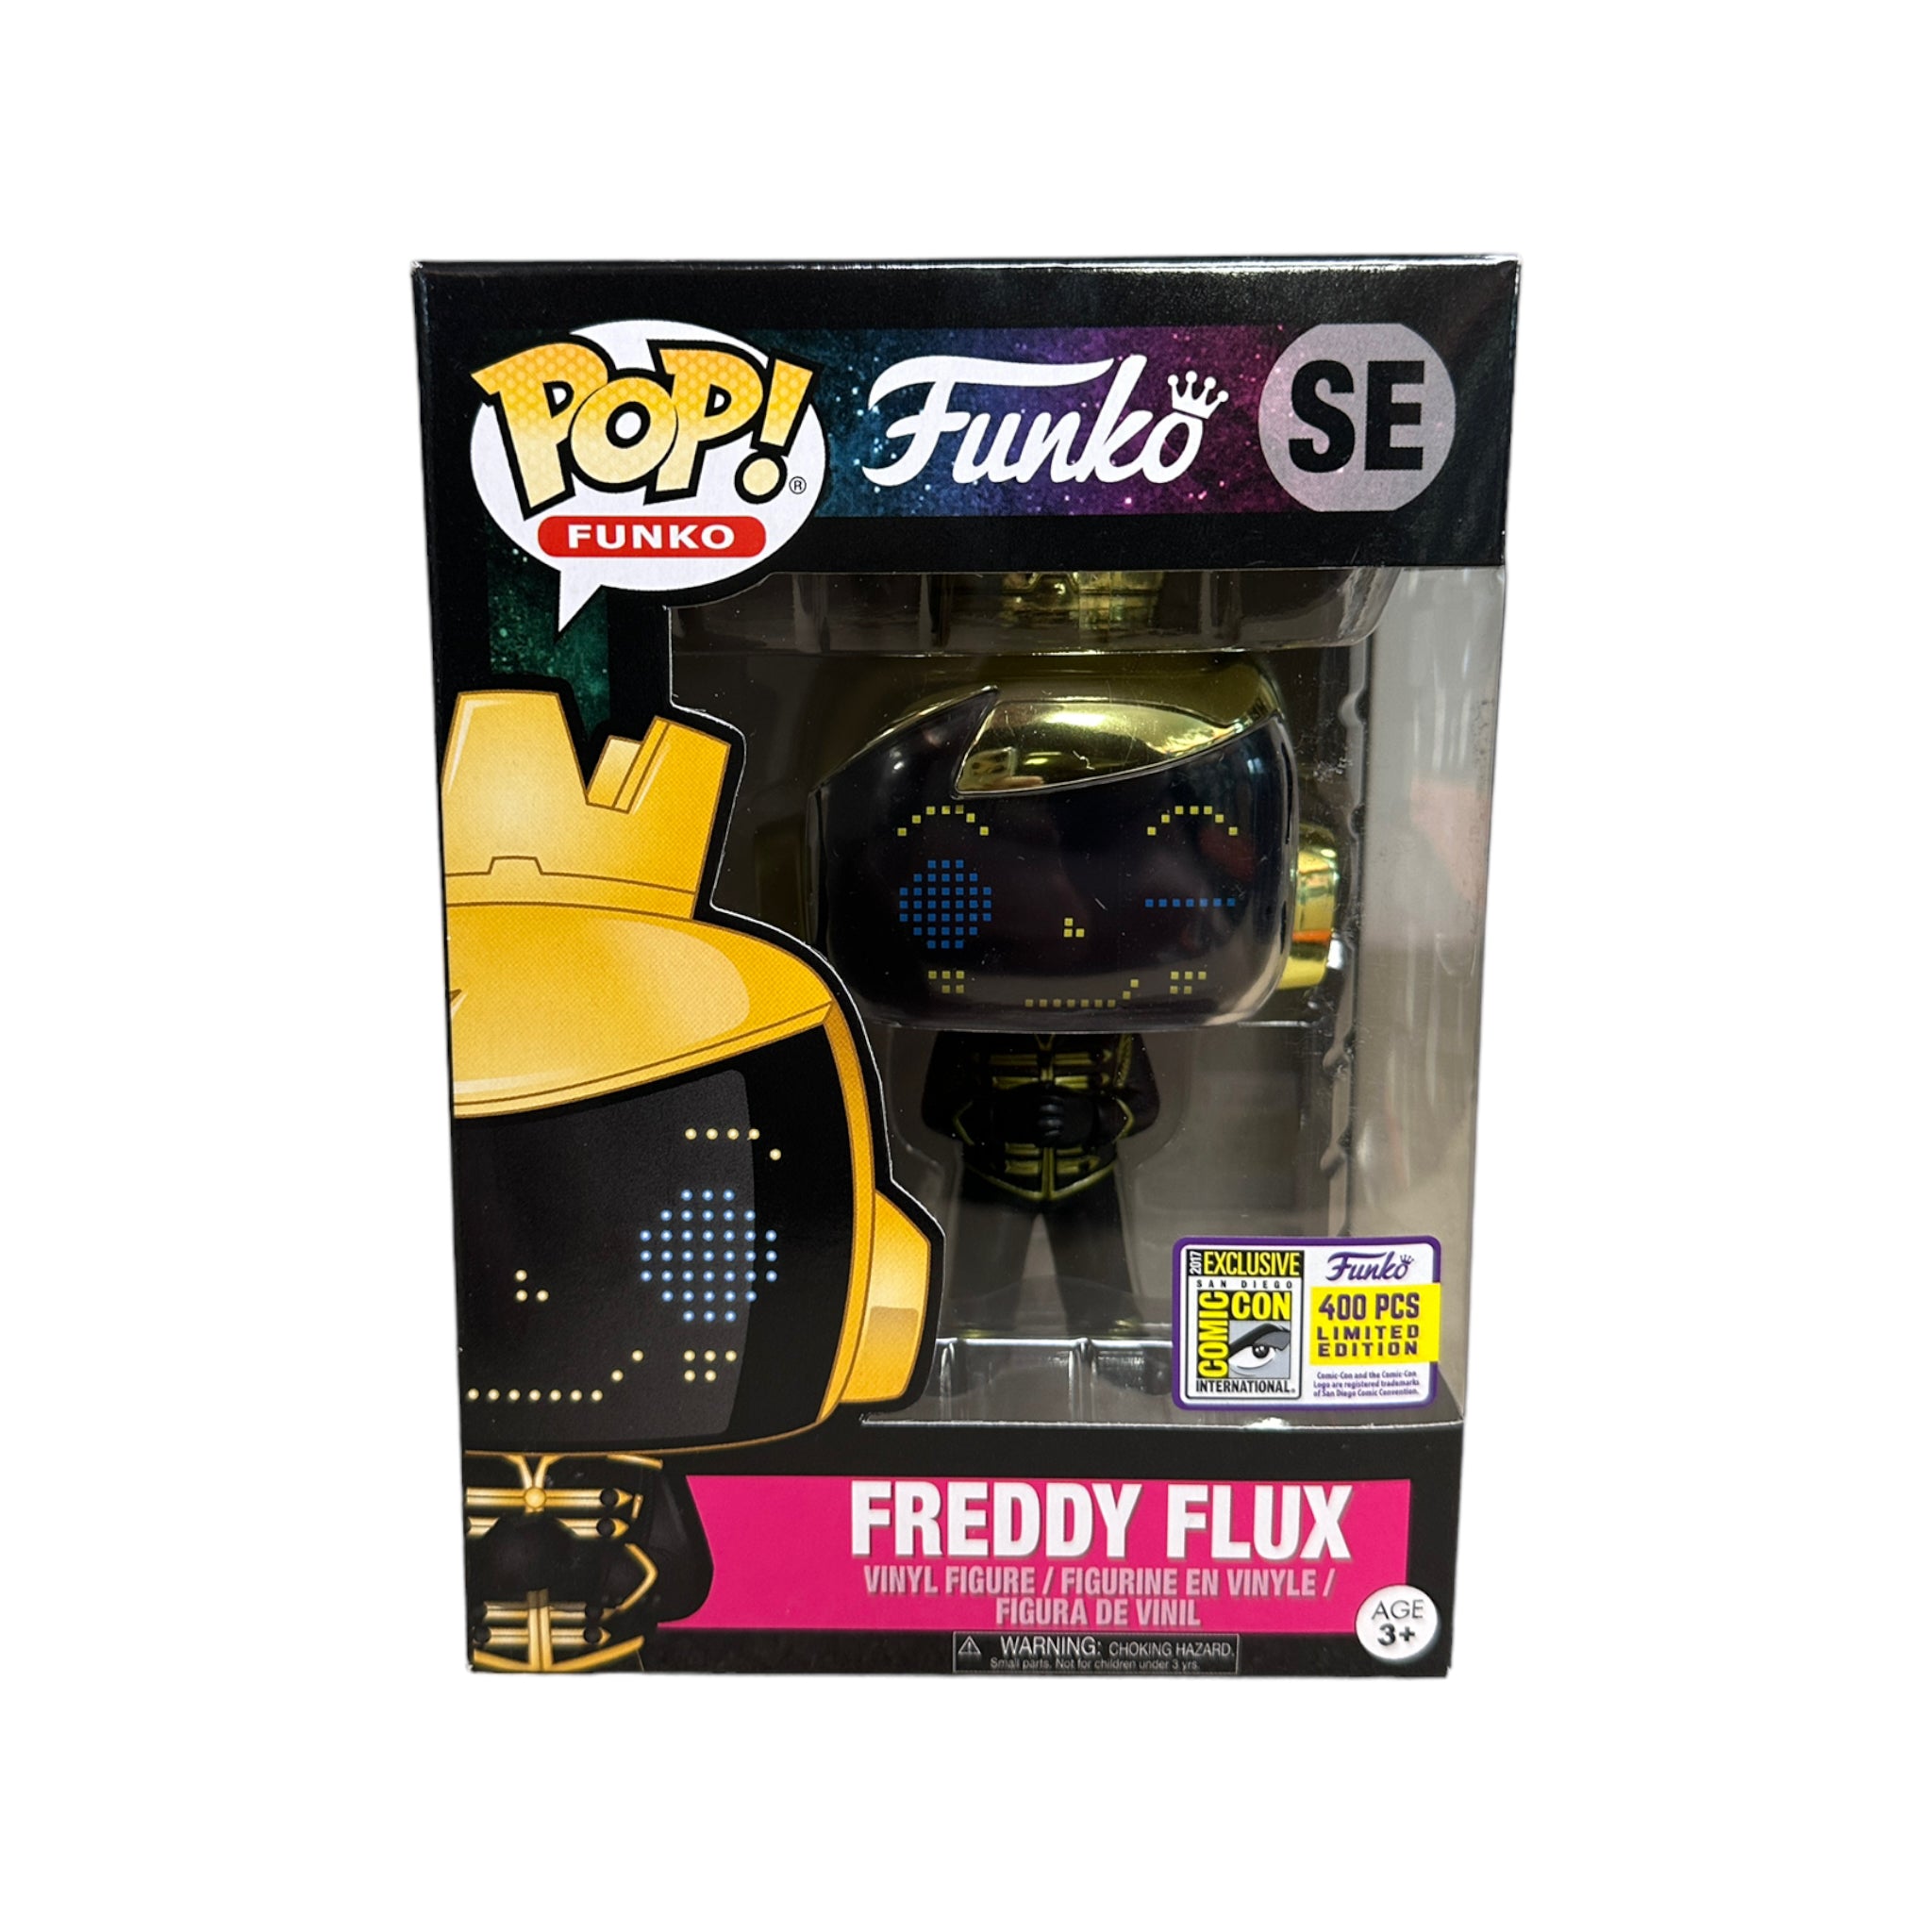 Freddy Flux Fission Funko Pop! - SDCC 2017 Exclusive LE400 Pcs - Condition 7.5/10